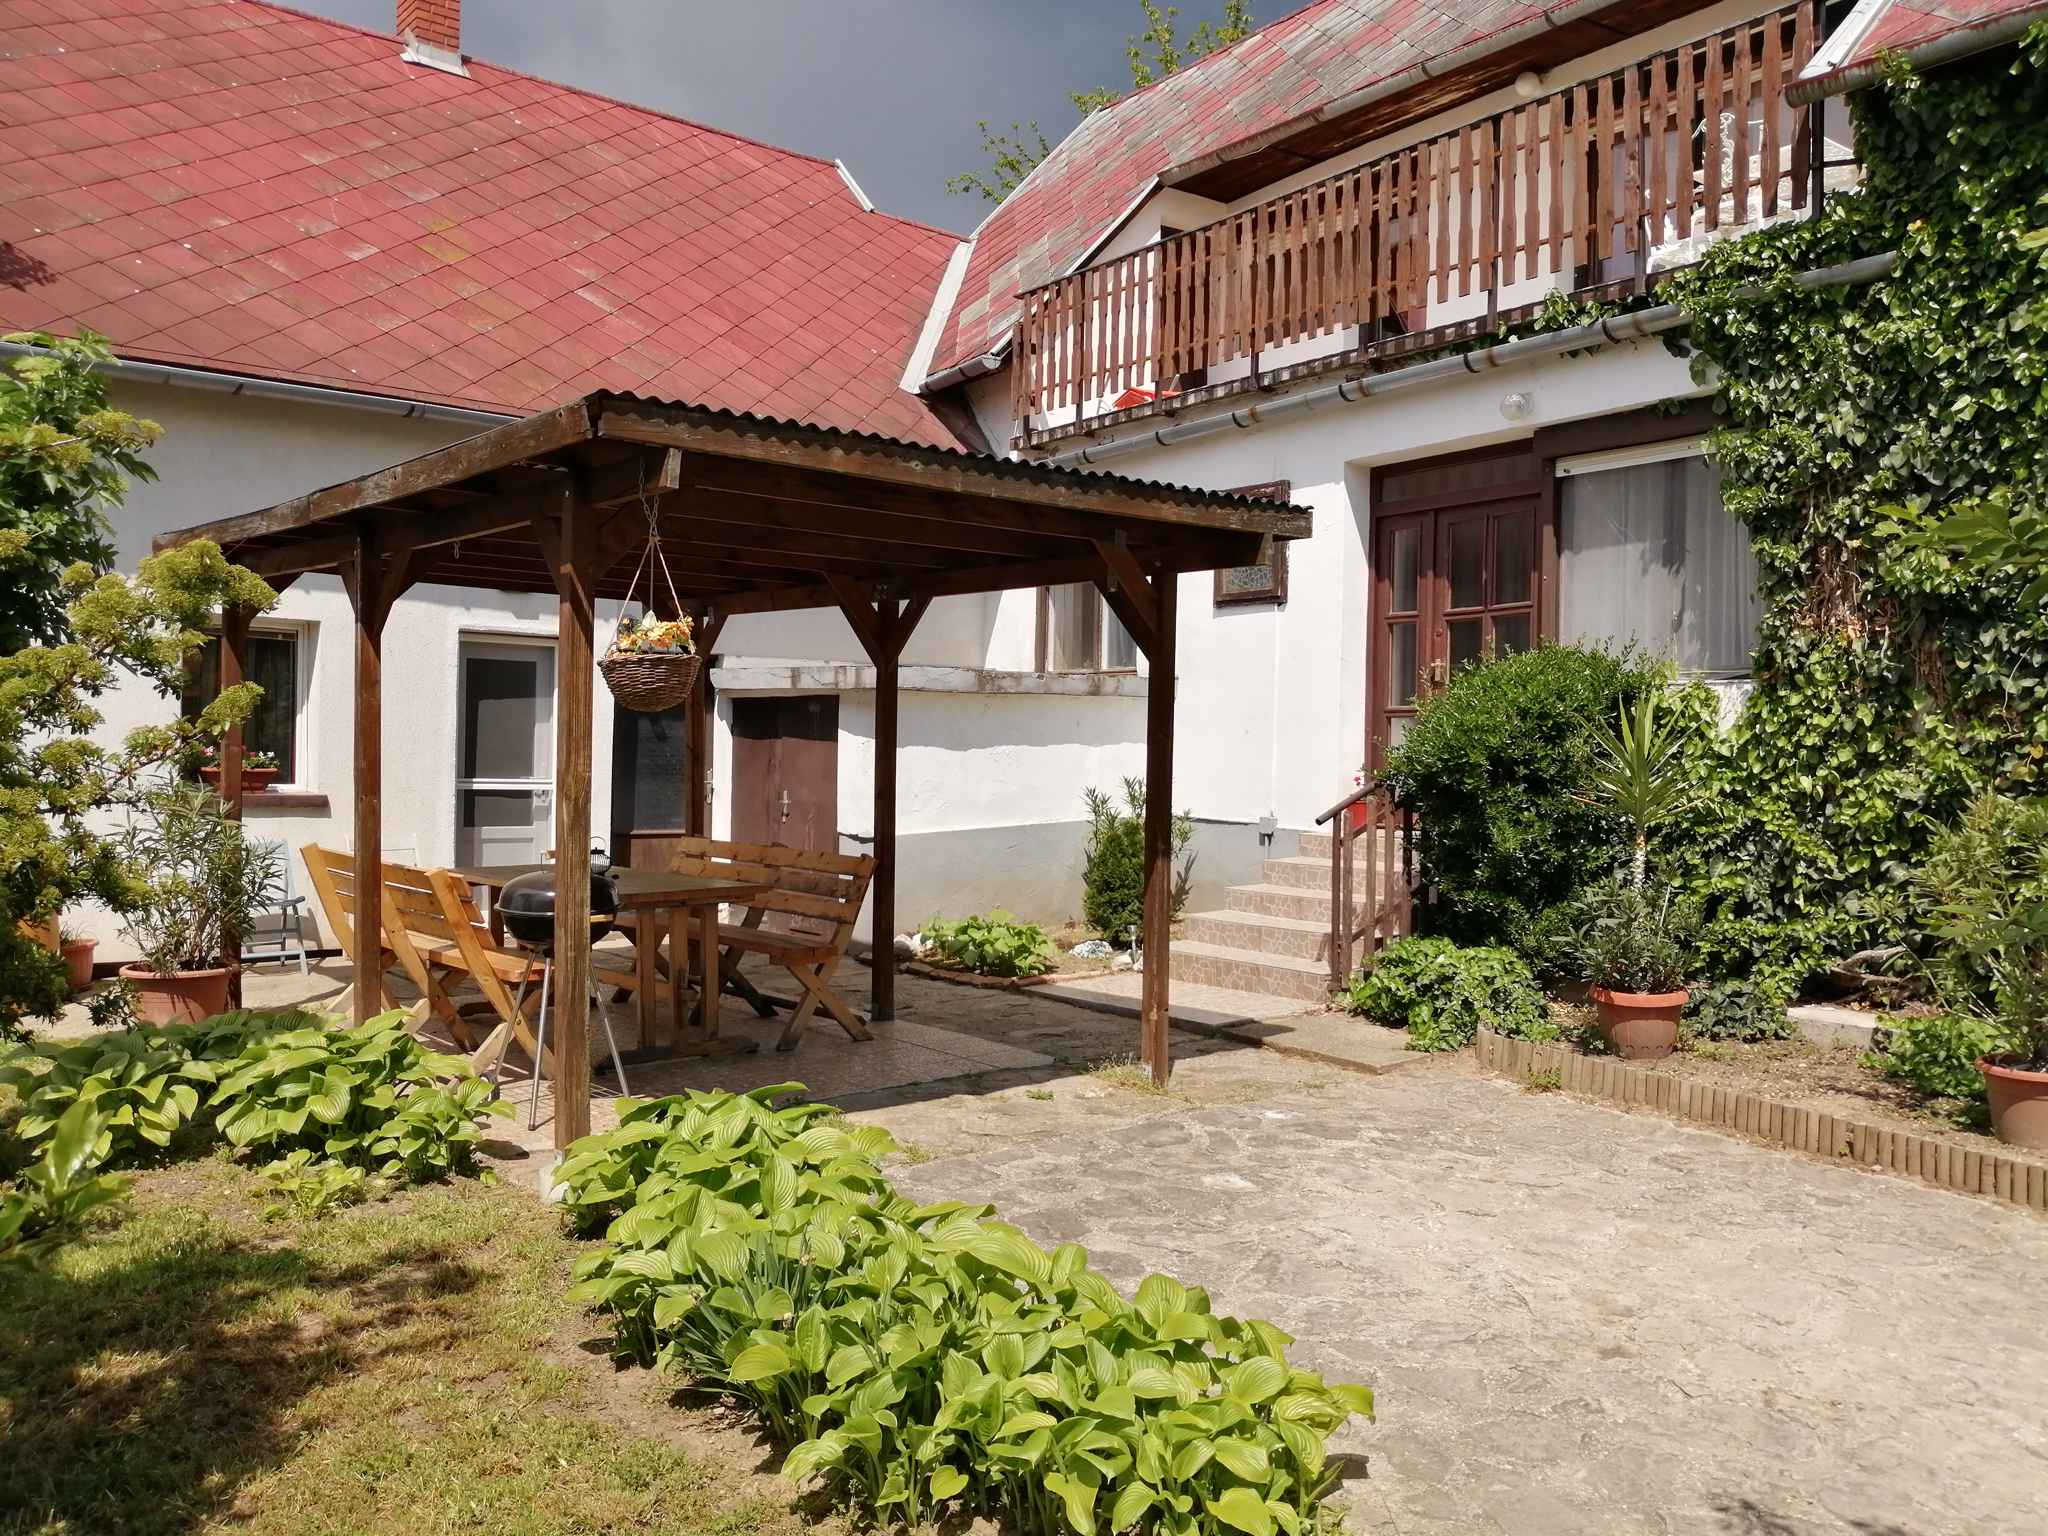 Ferienhaus mit Ausblick auf dem Plattensee  in Ungarn